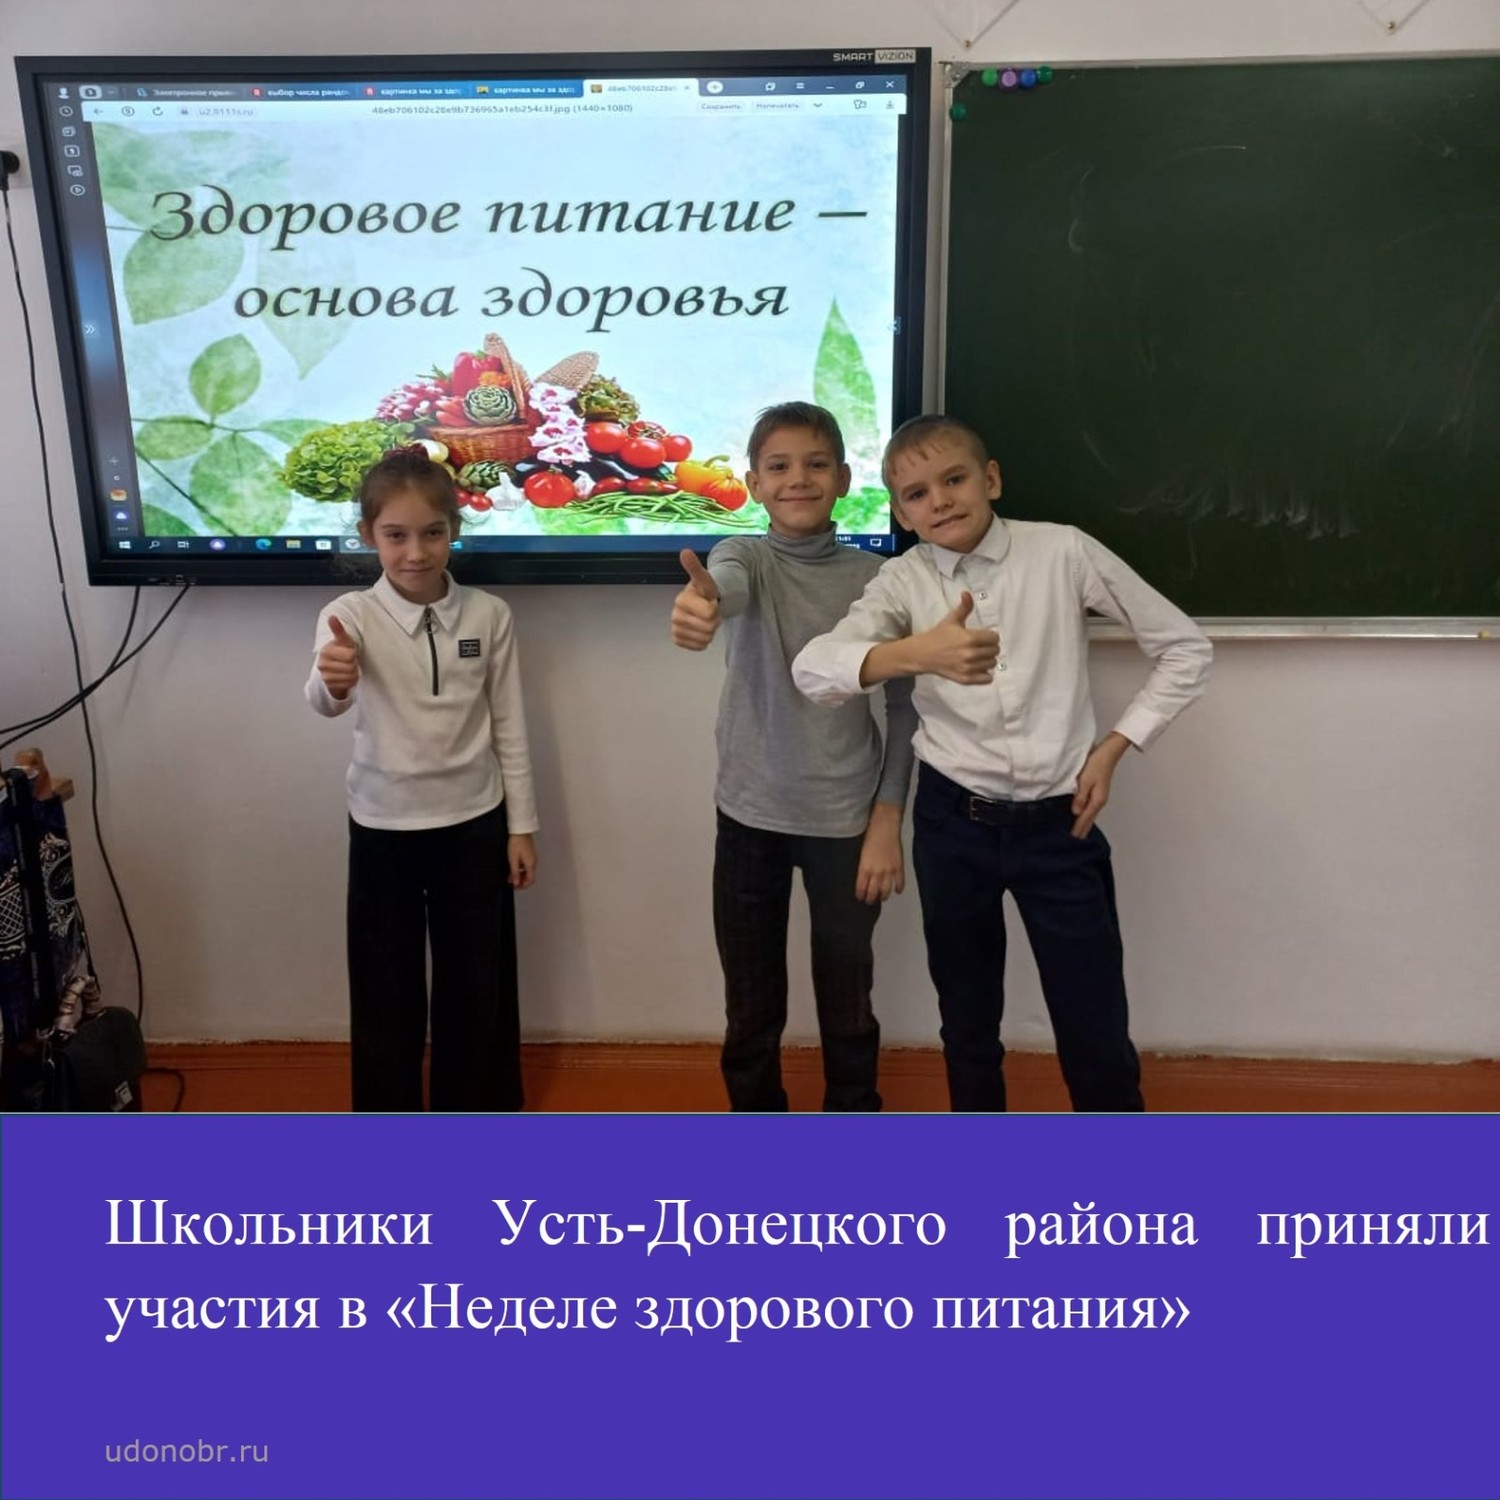 Школьники Усть-Донецкого района приняли участия в «Неделе здорового питания»